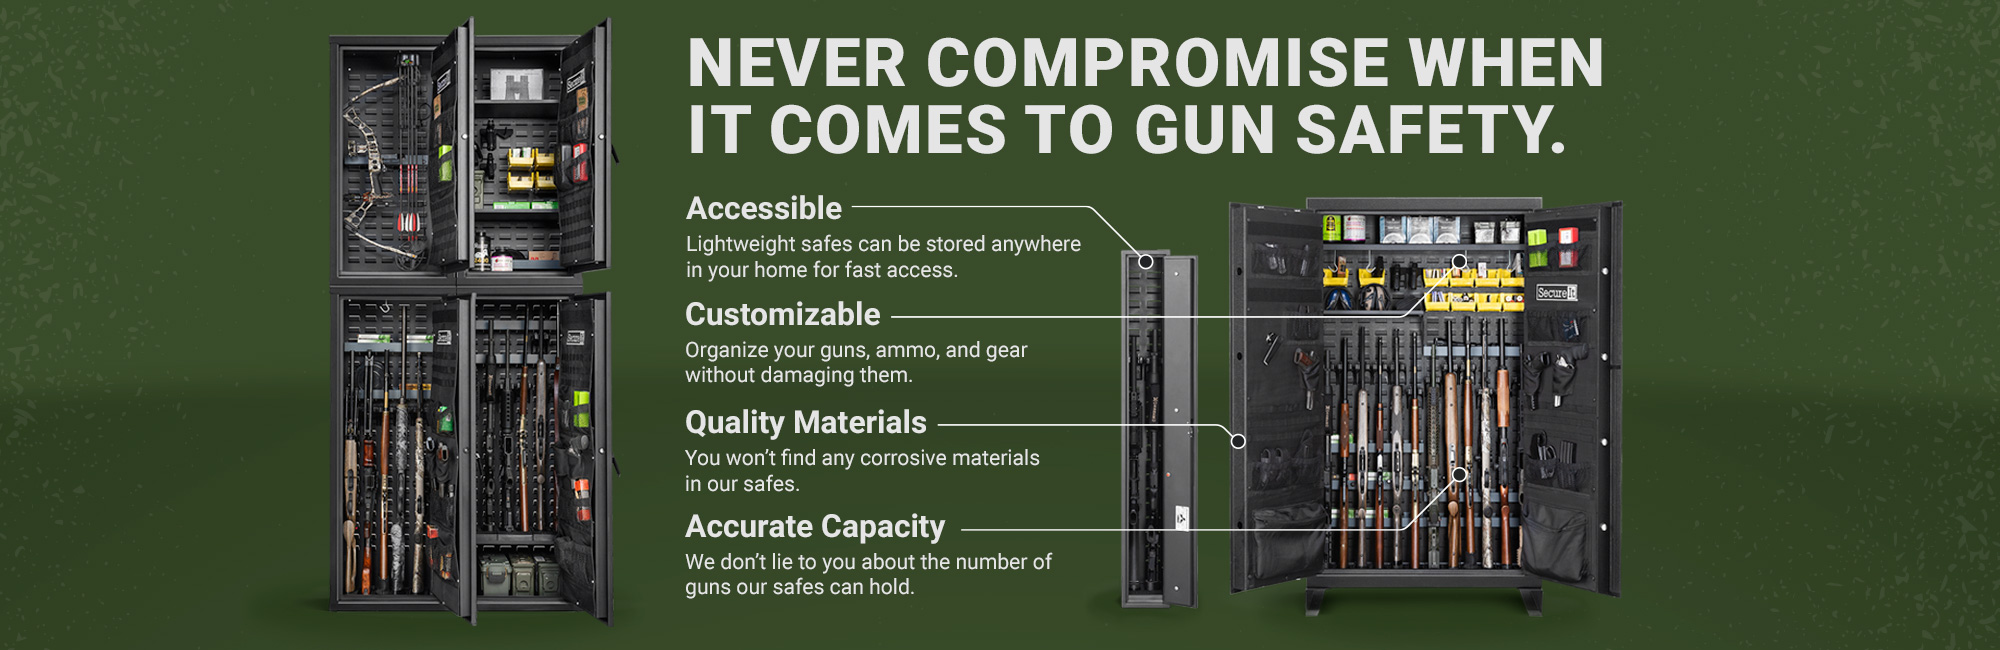 SecureIt gun safe system benefits